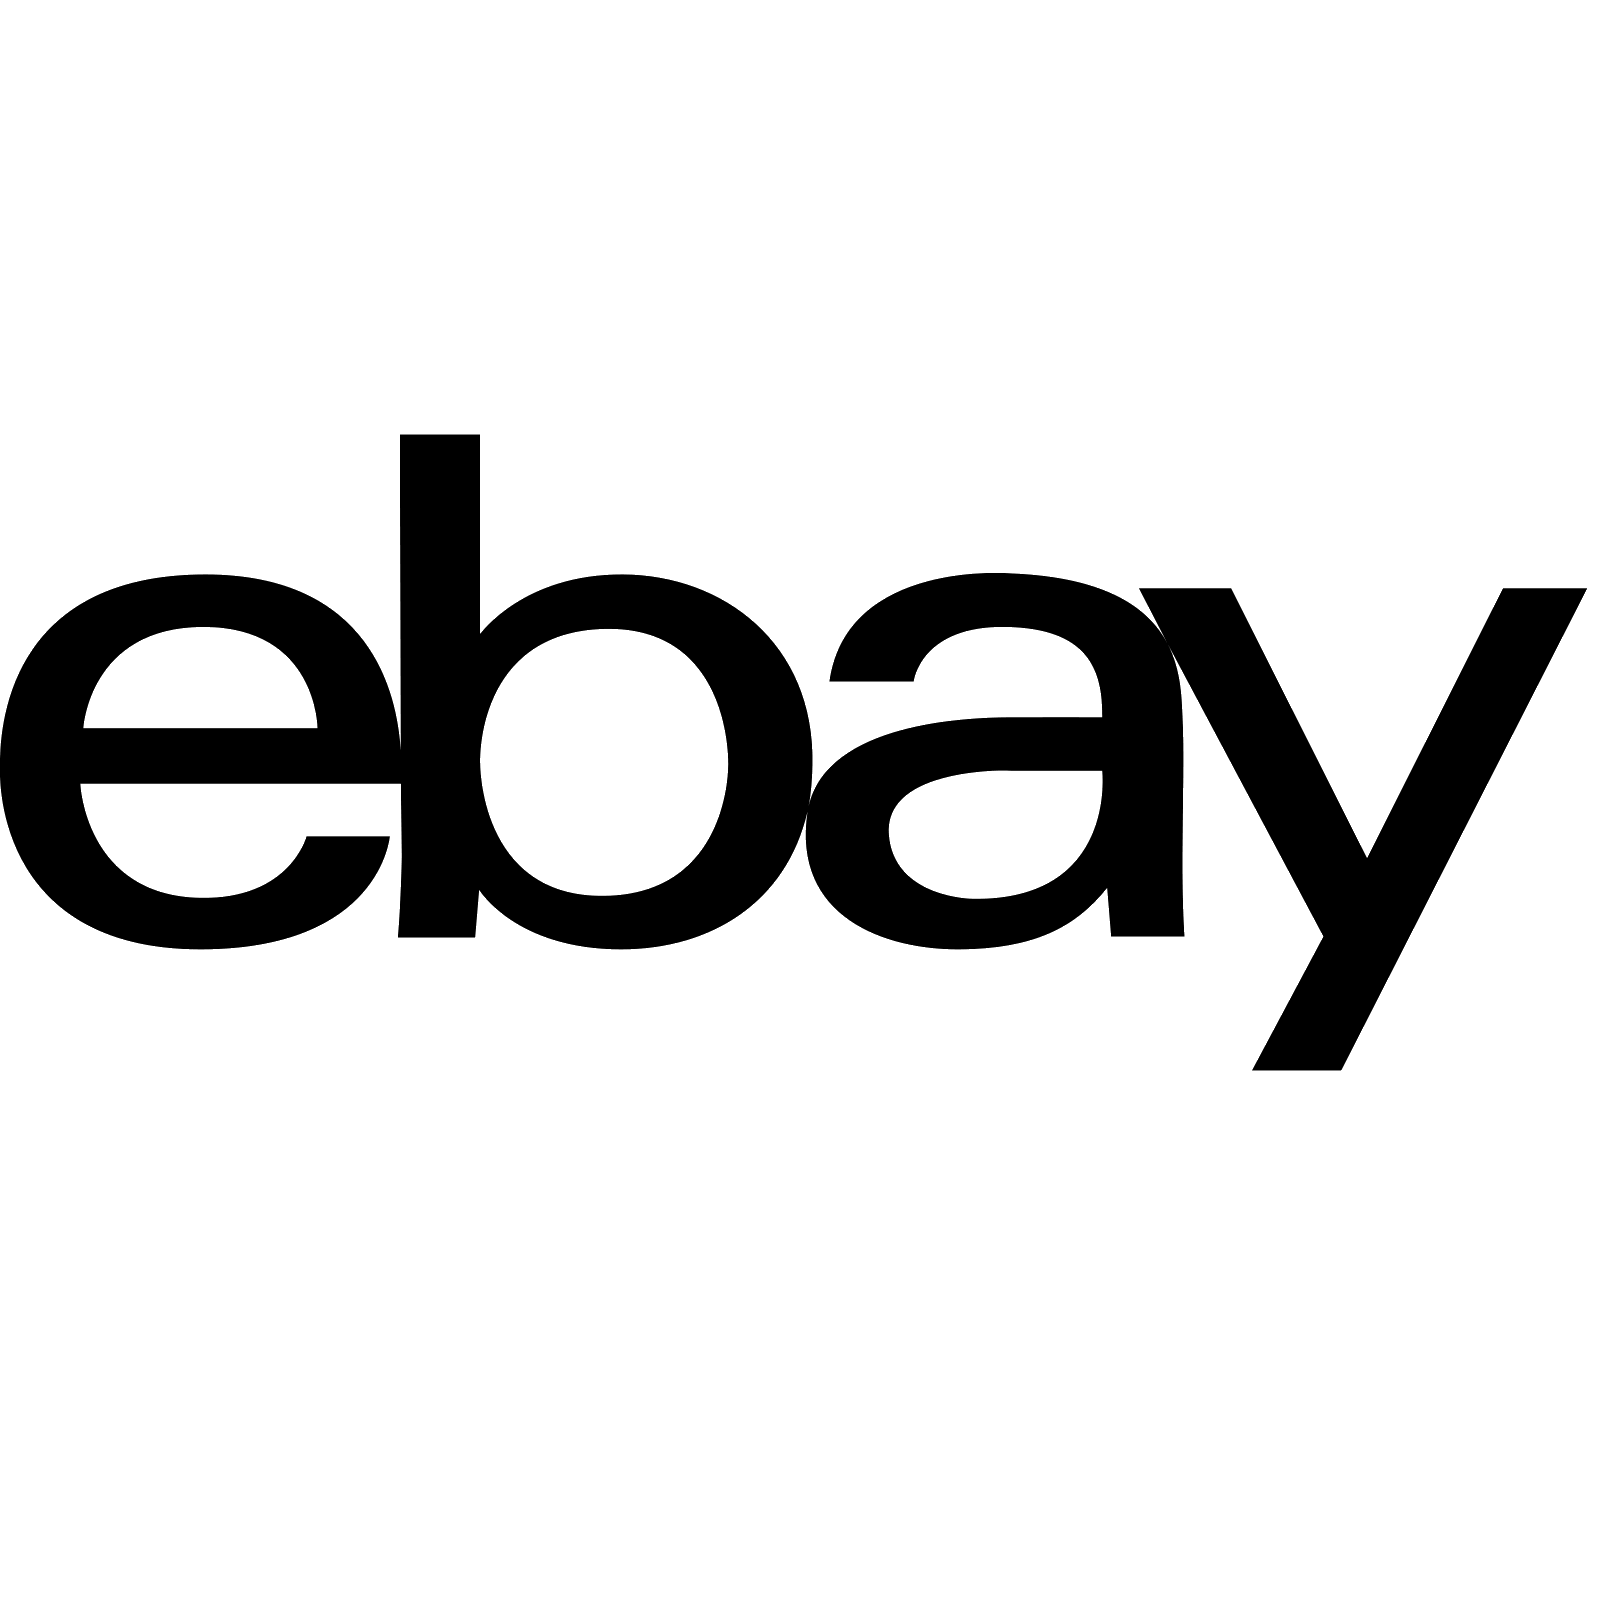 eBay Black Logo - Logo Ebay PNG Transparent Logo Ebay.PNG Images. | PlusPNG